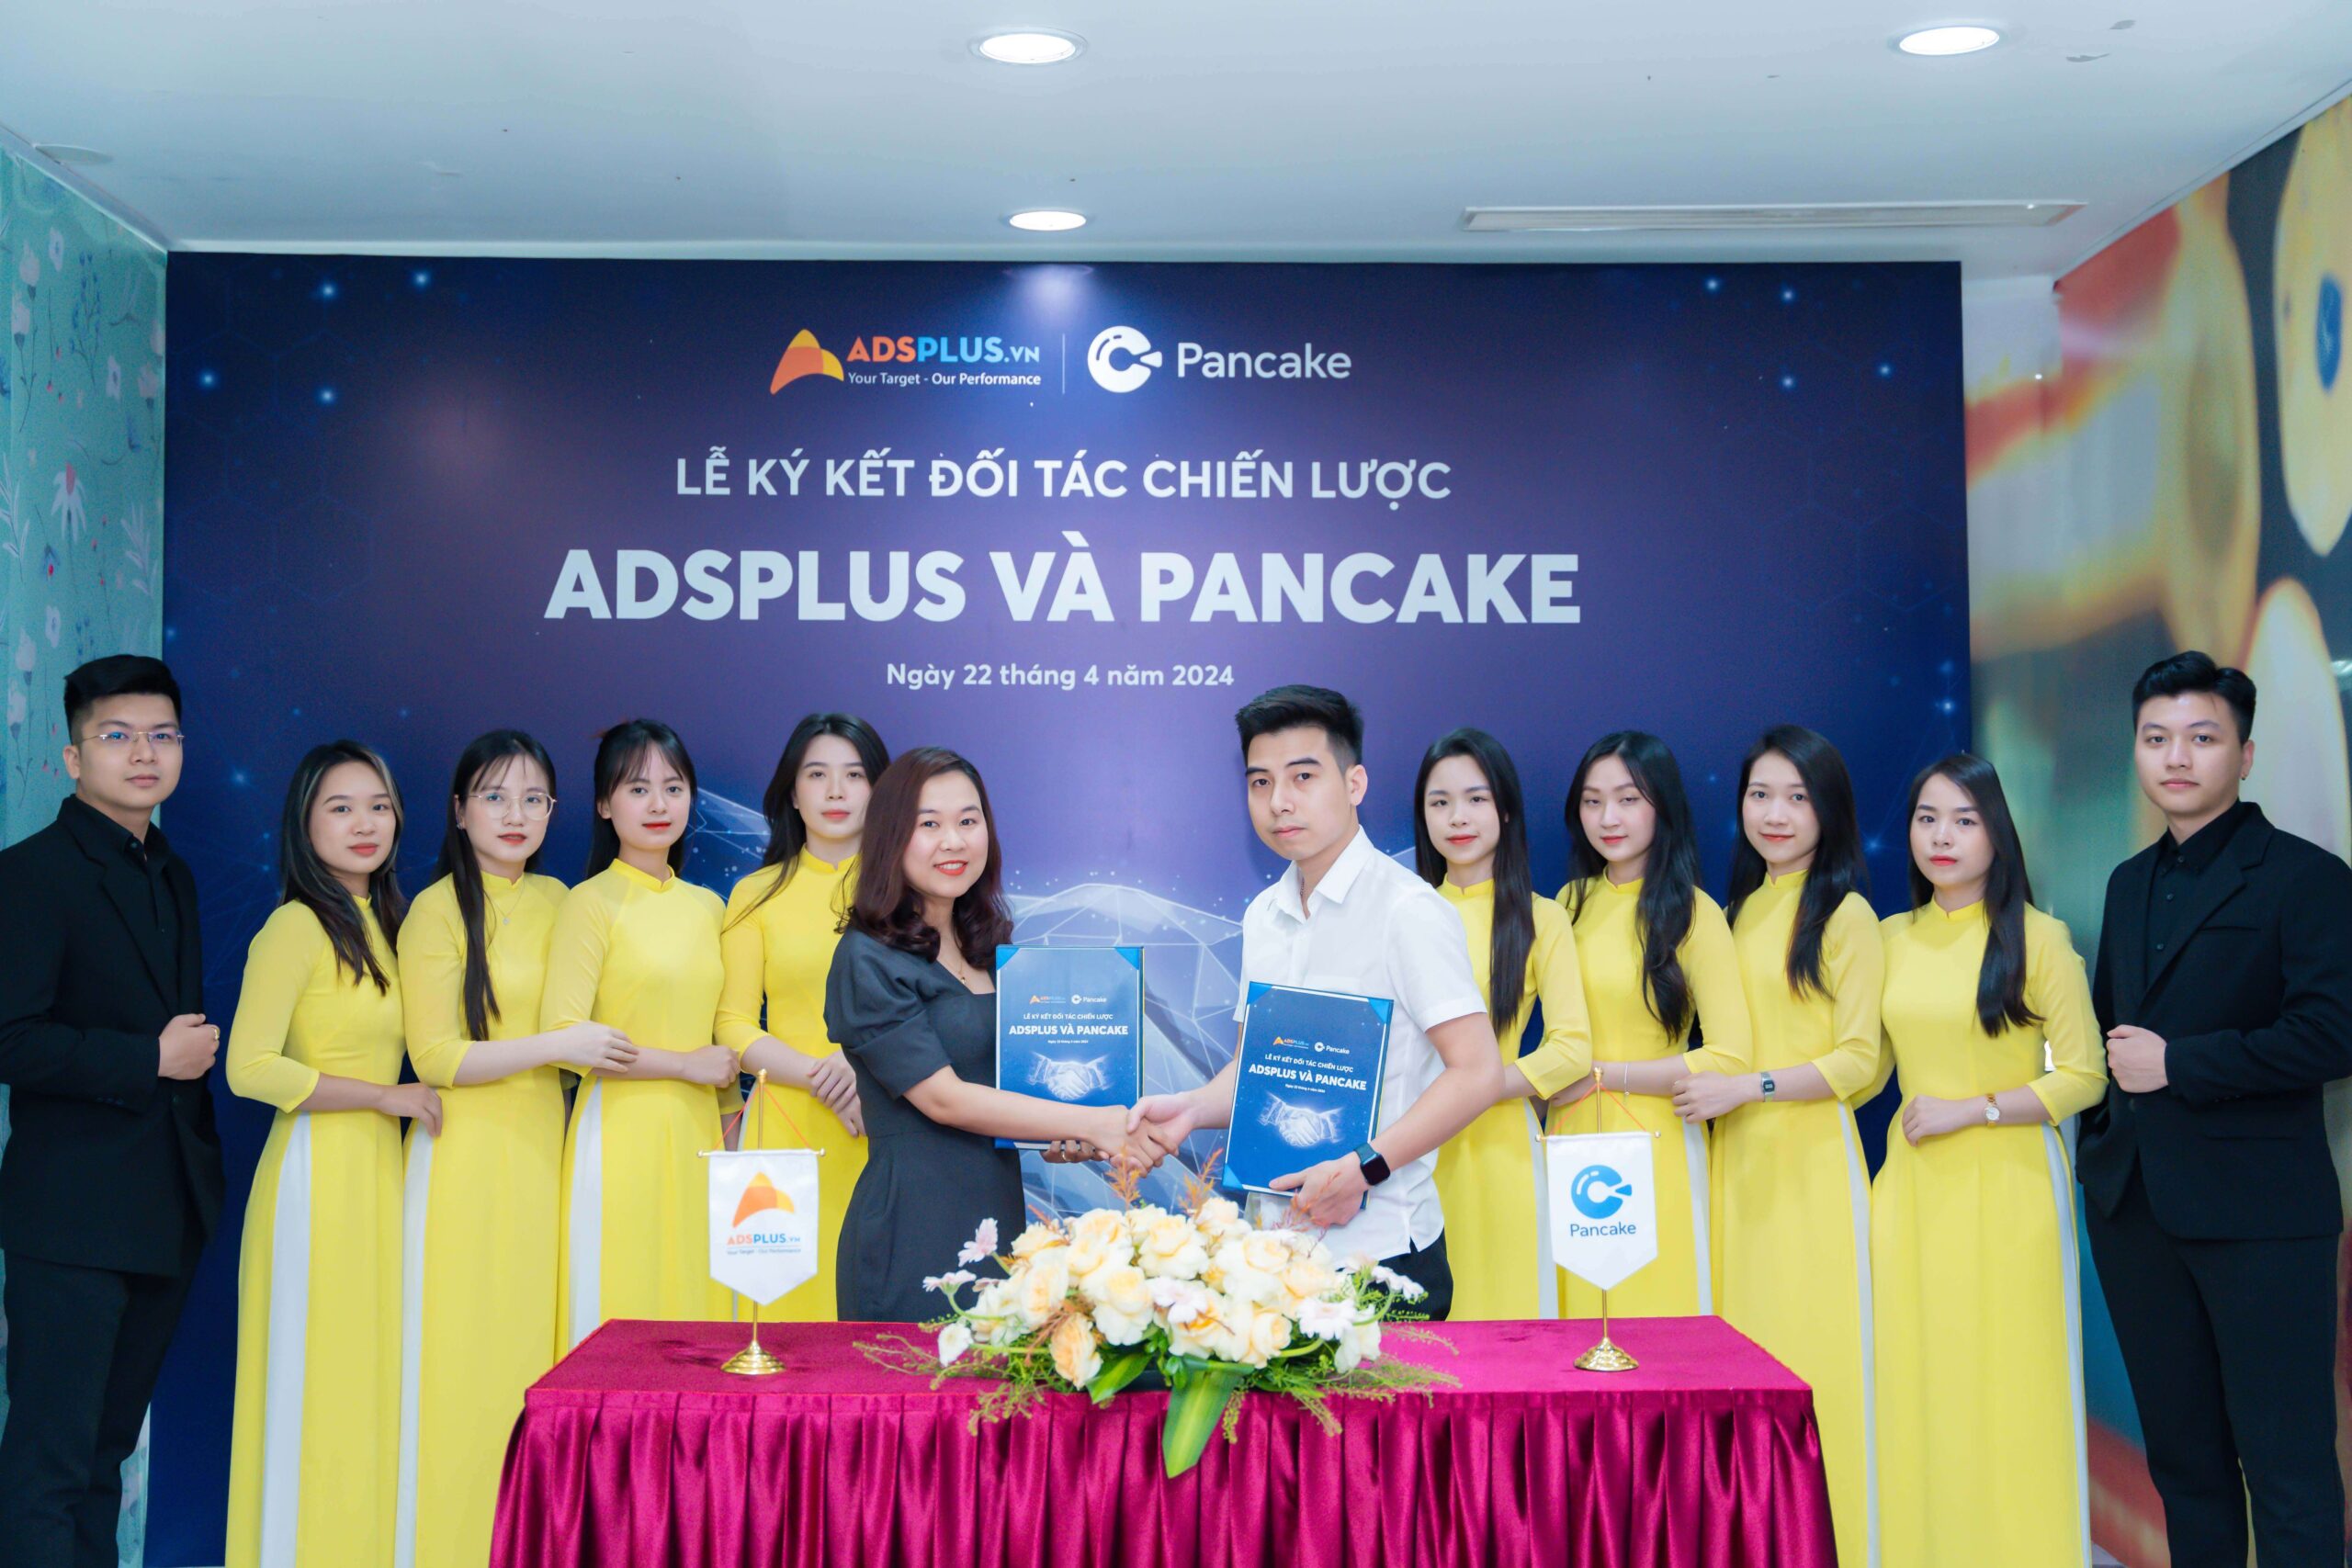 Hợp tác thương mại cùng tạo giá trị giữa Adsplus & Pancake 